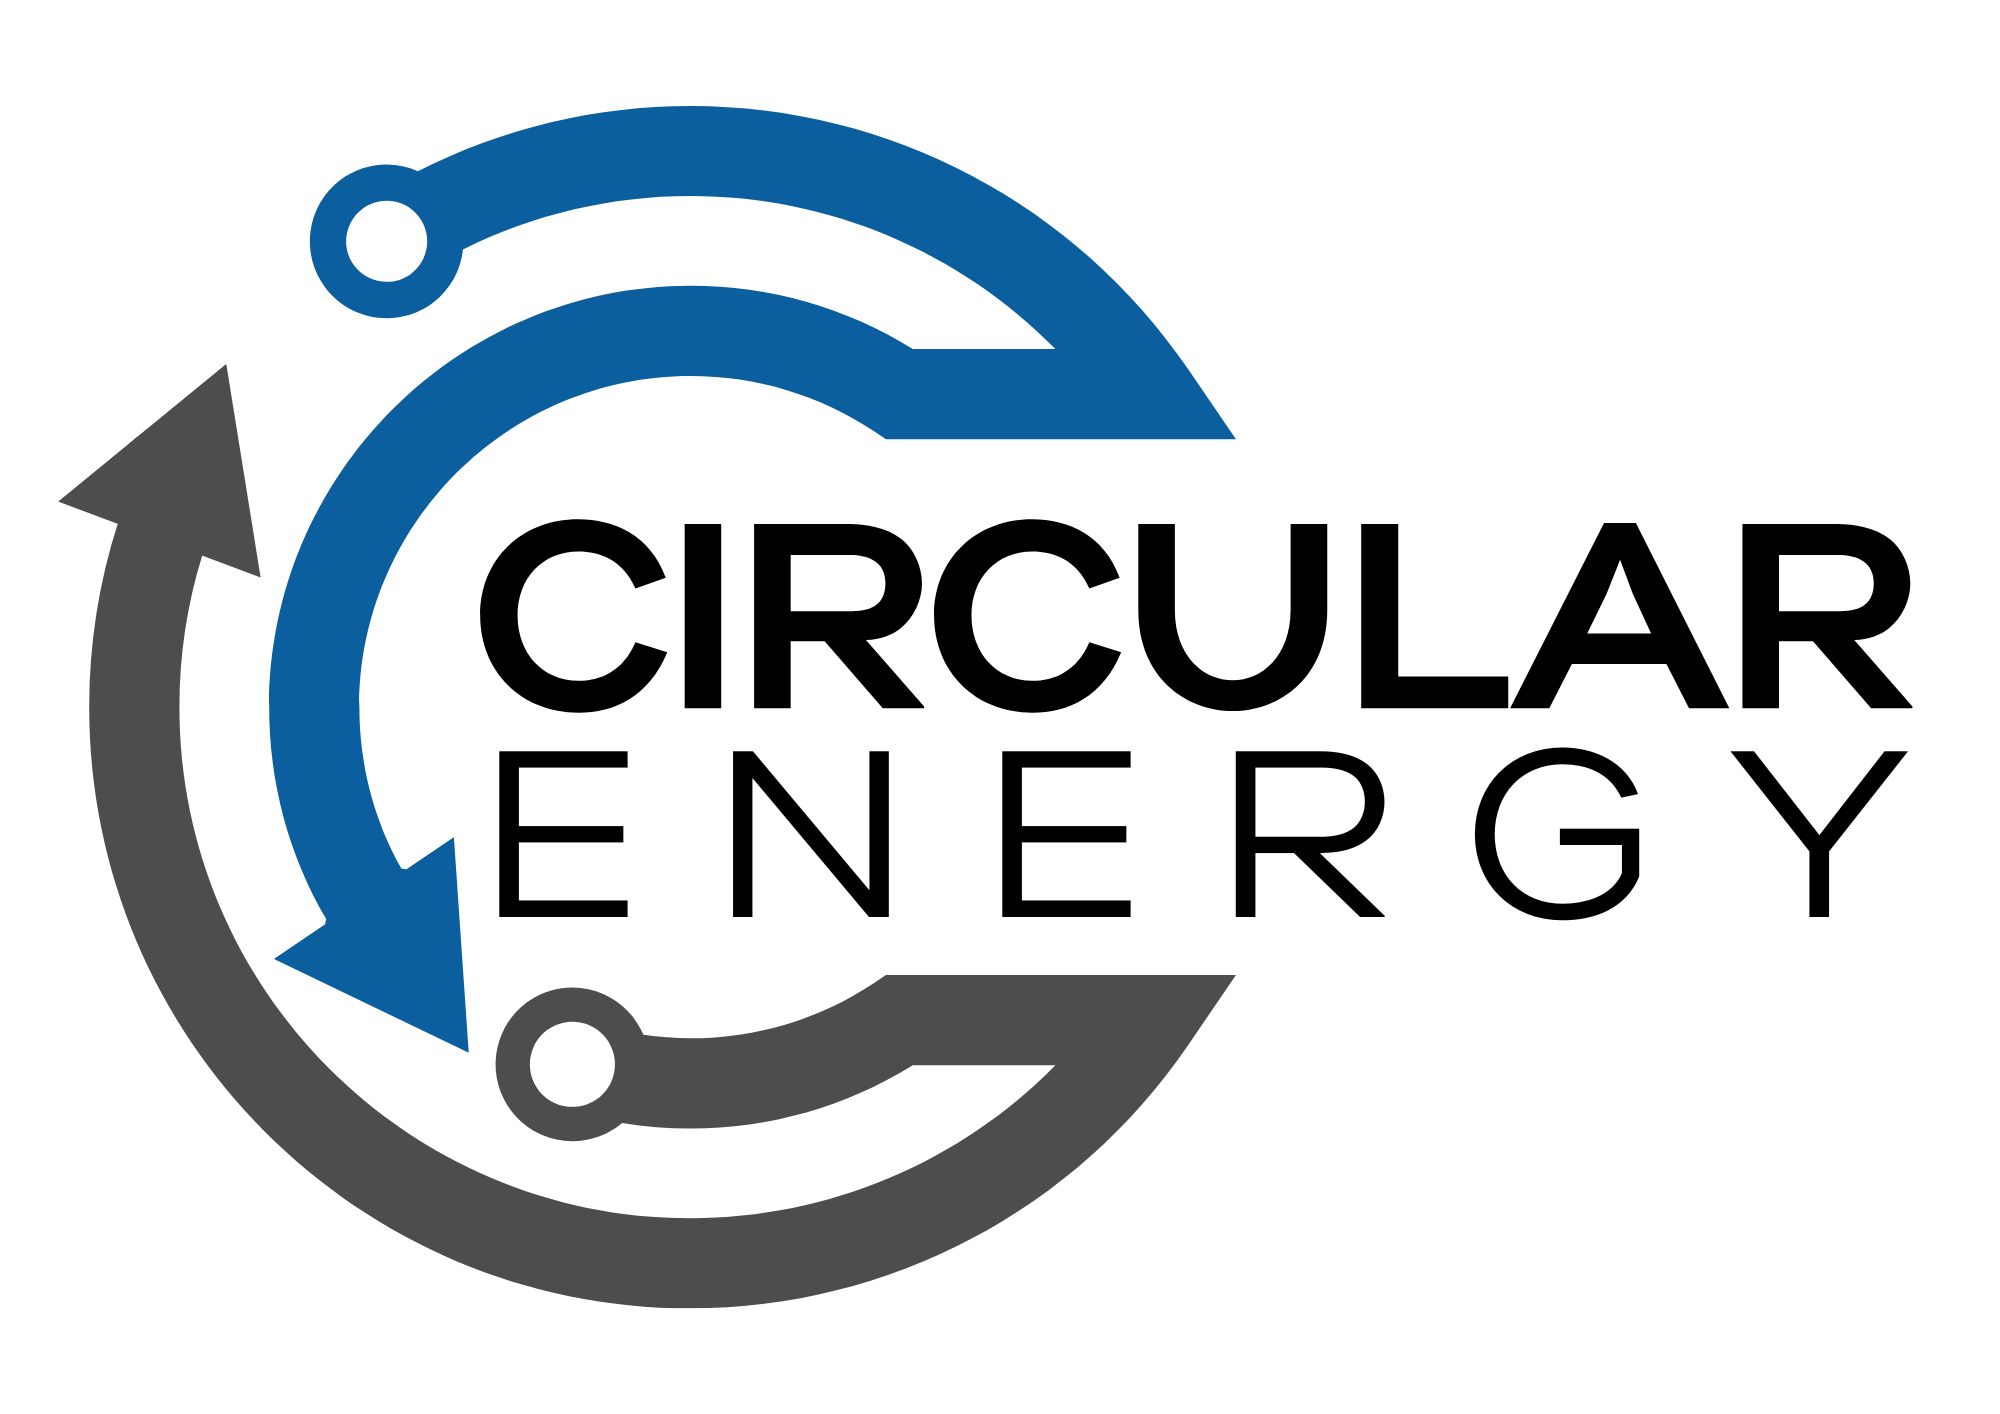 Circular Energy Logo